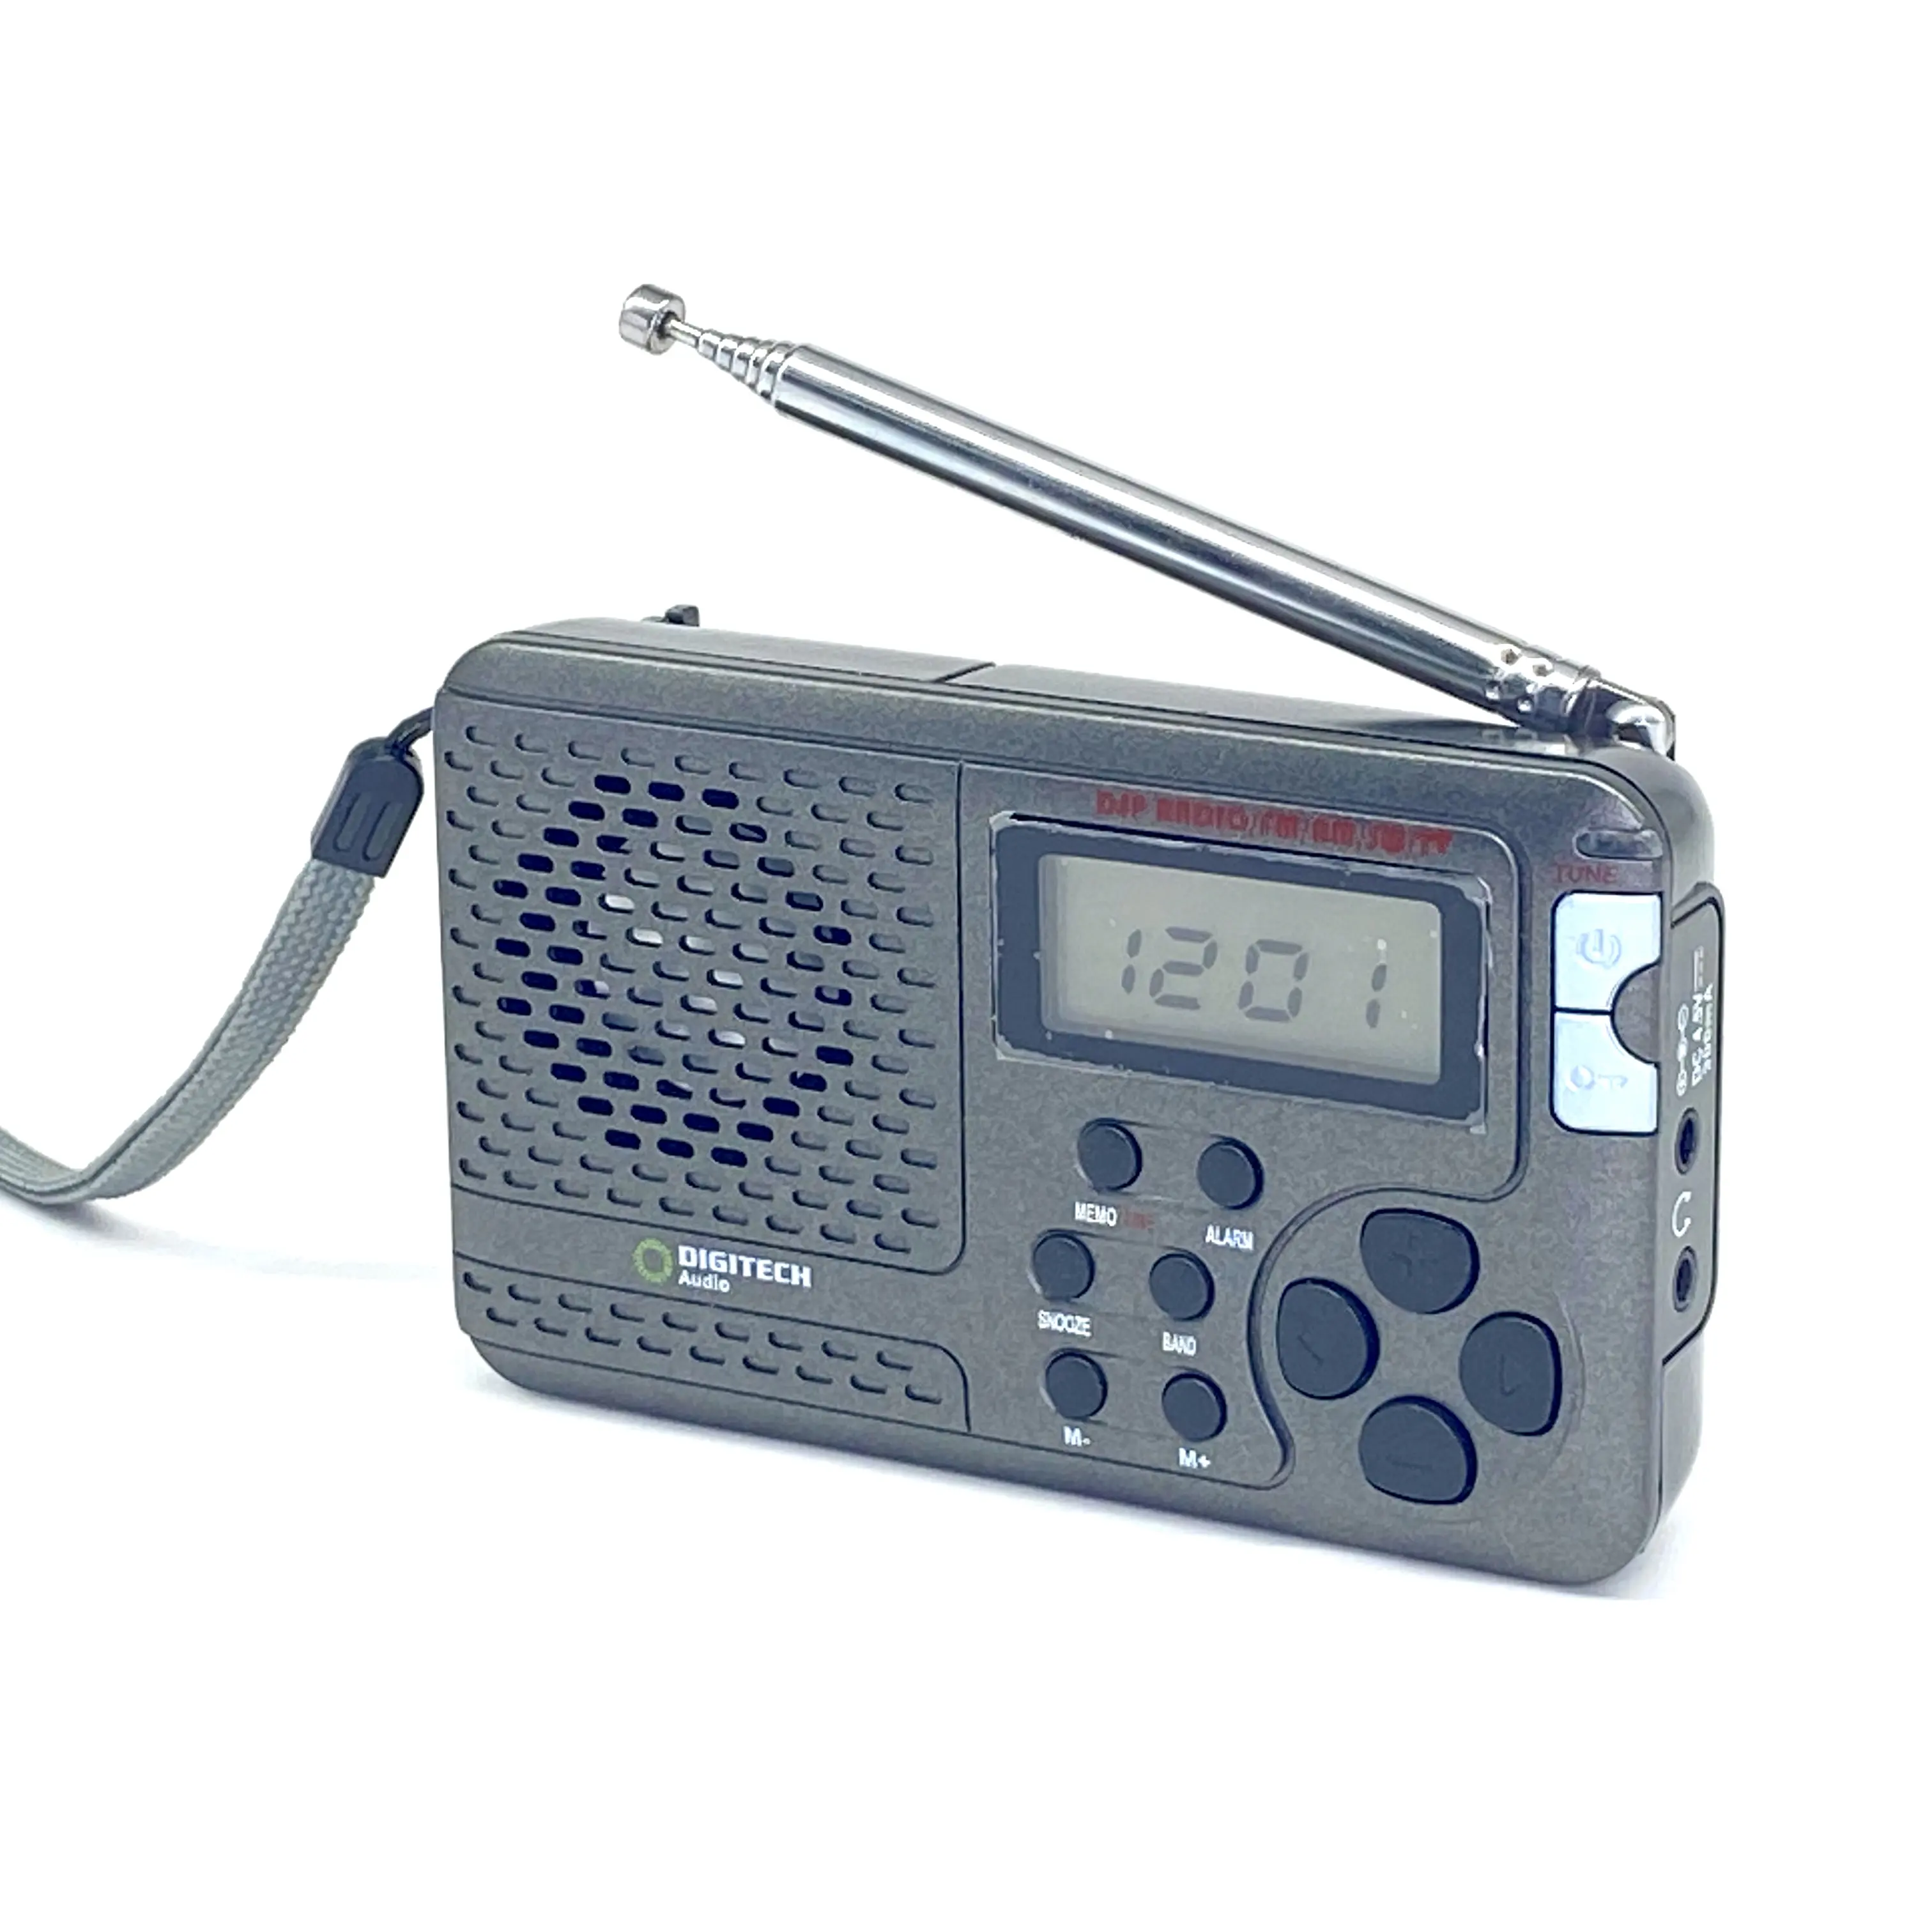 Full Band PLL цифровой будильник с антенной, широкочастотный ЖК-дисплей, по заводской цене